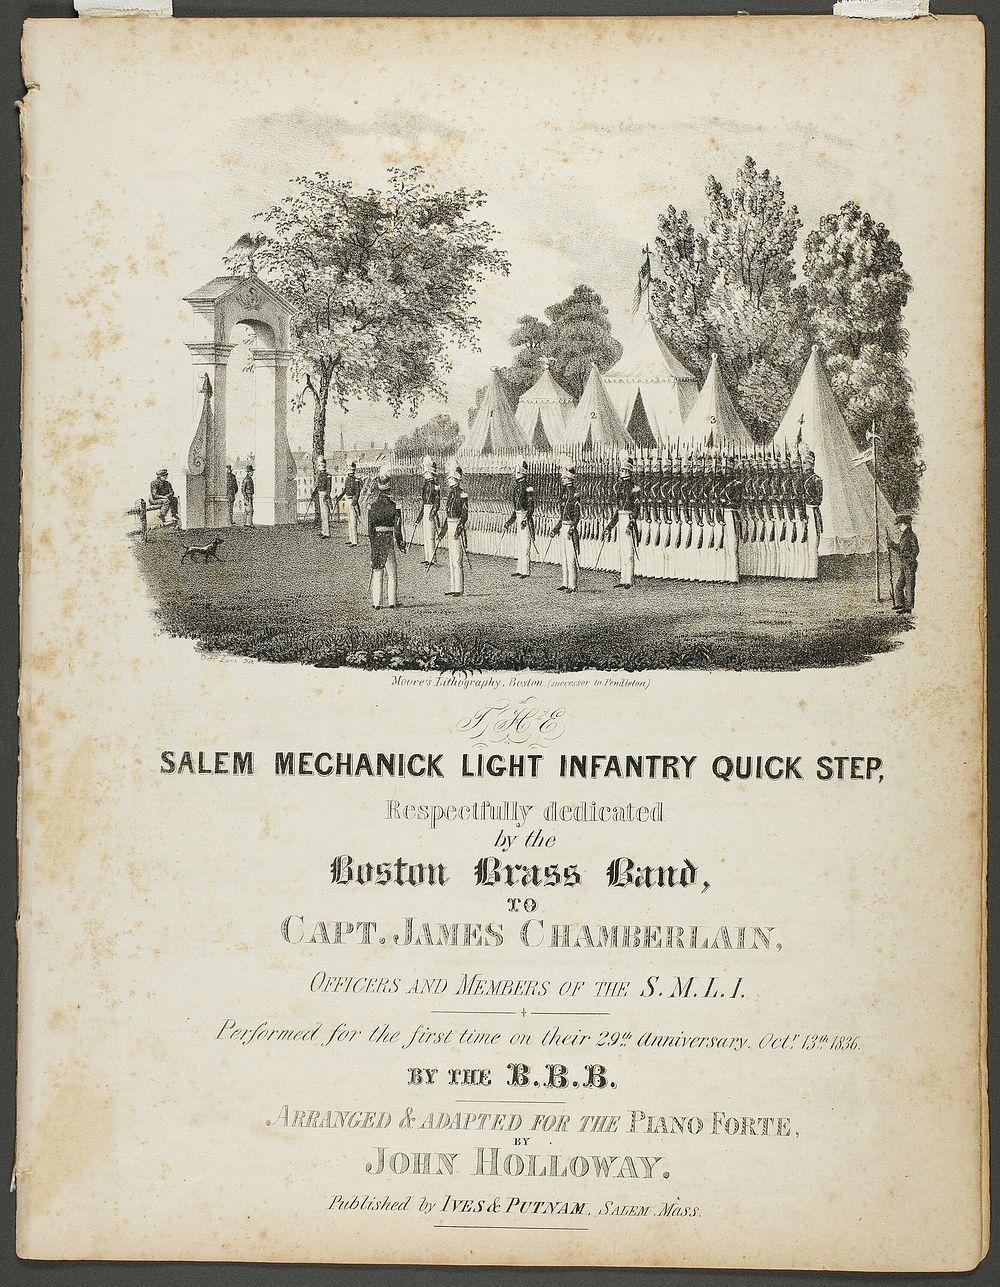 The Salem Mechanick Light Infantry Quick Step by Fitz Henry Lane